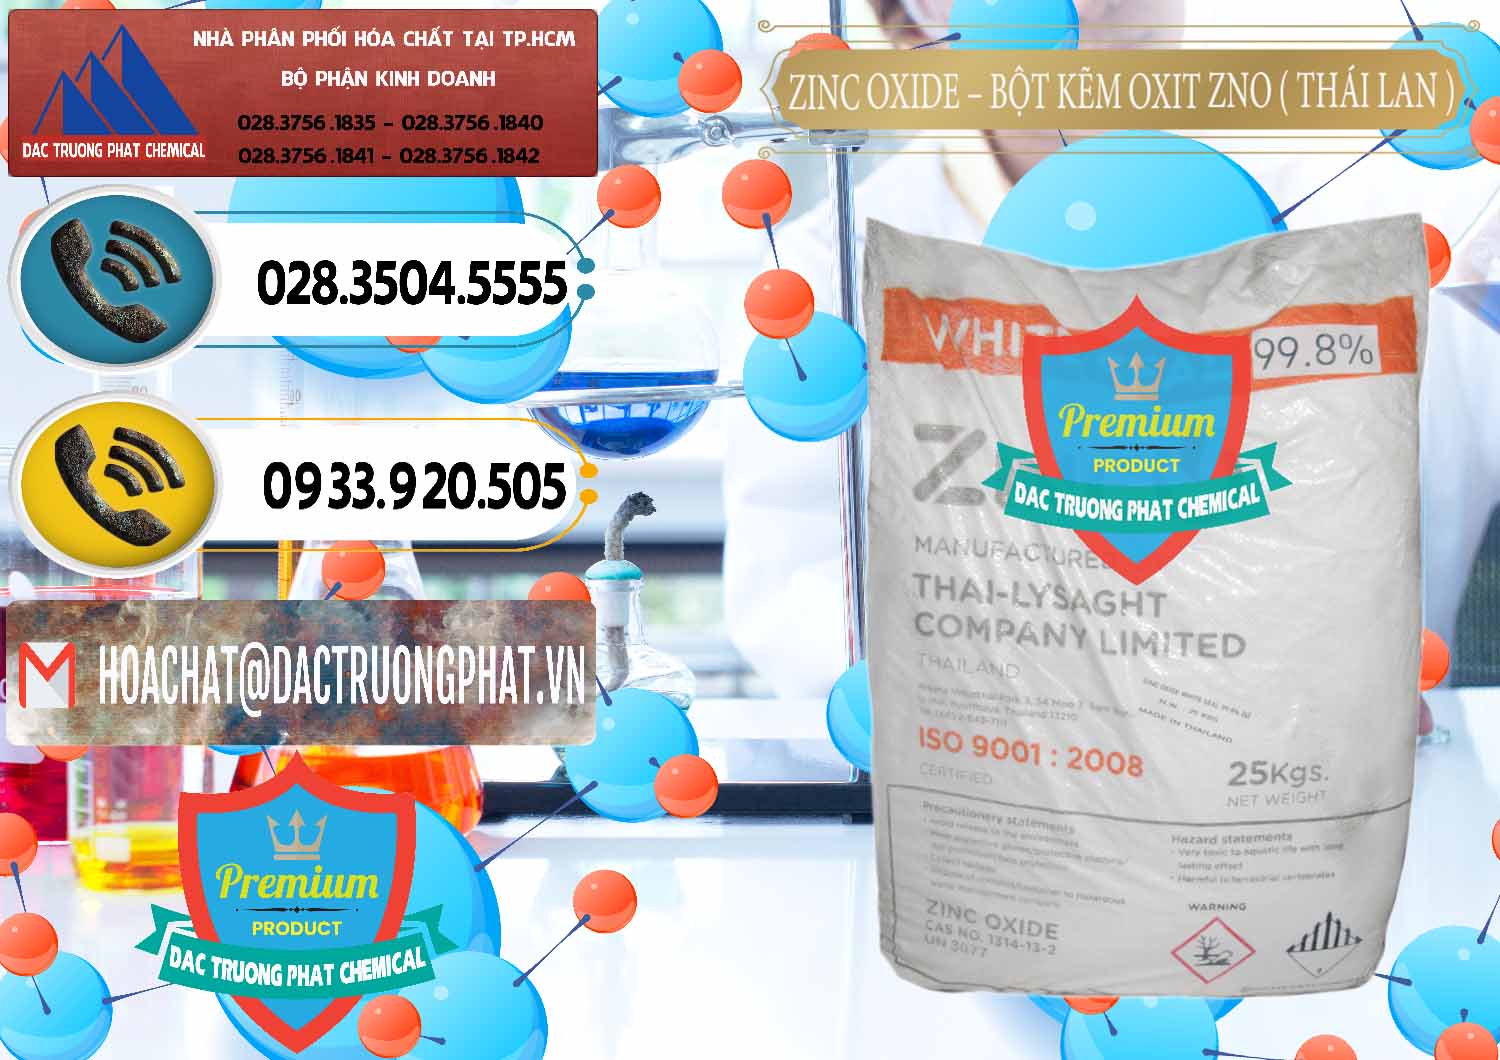 Cty cung cấp - bán Zinc Oxide - Bột Kẽm Oxit ZNO Thái Lan Thailand - 0181 - Chuyên kinh doanh và phân phối hóa chất tại TP.HCM - hoachatdetnhuom.vn